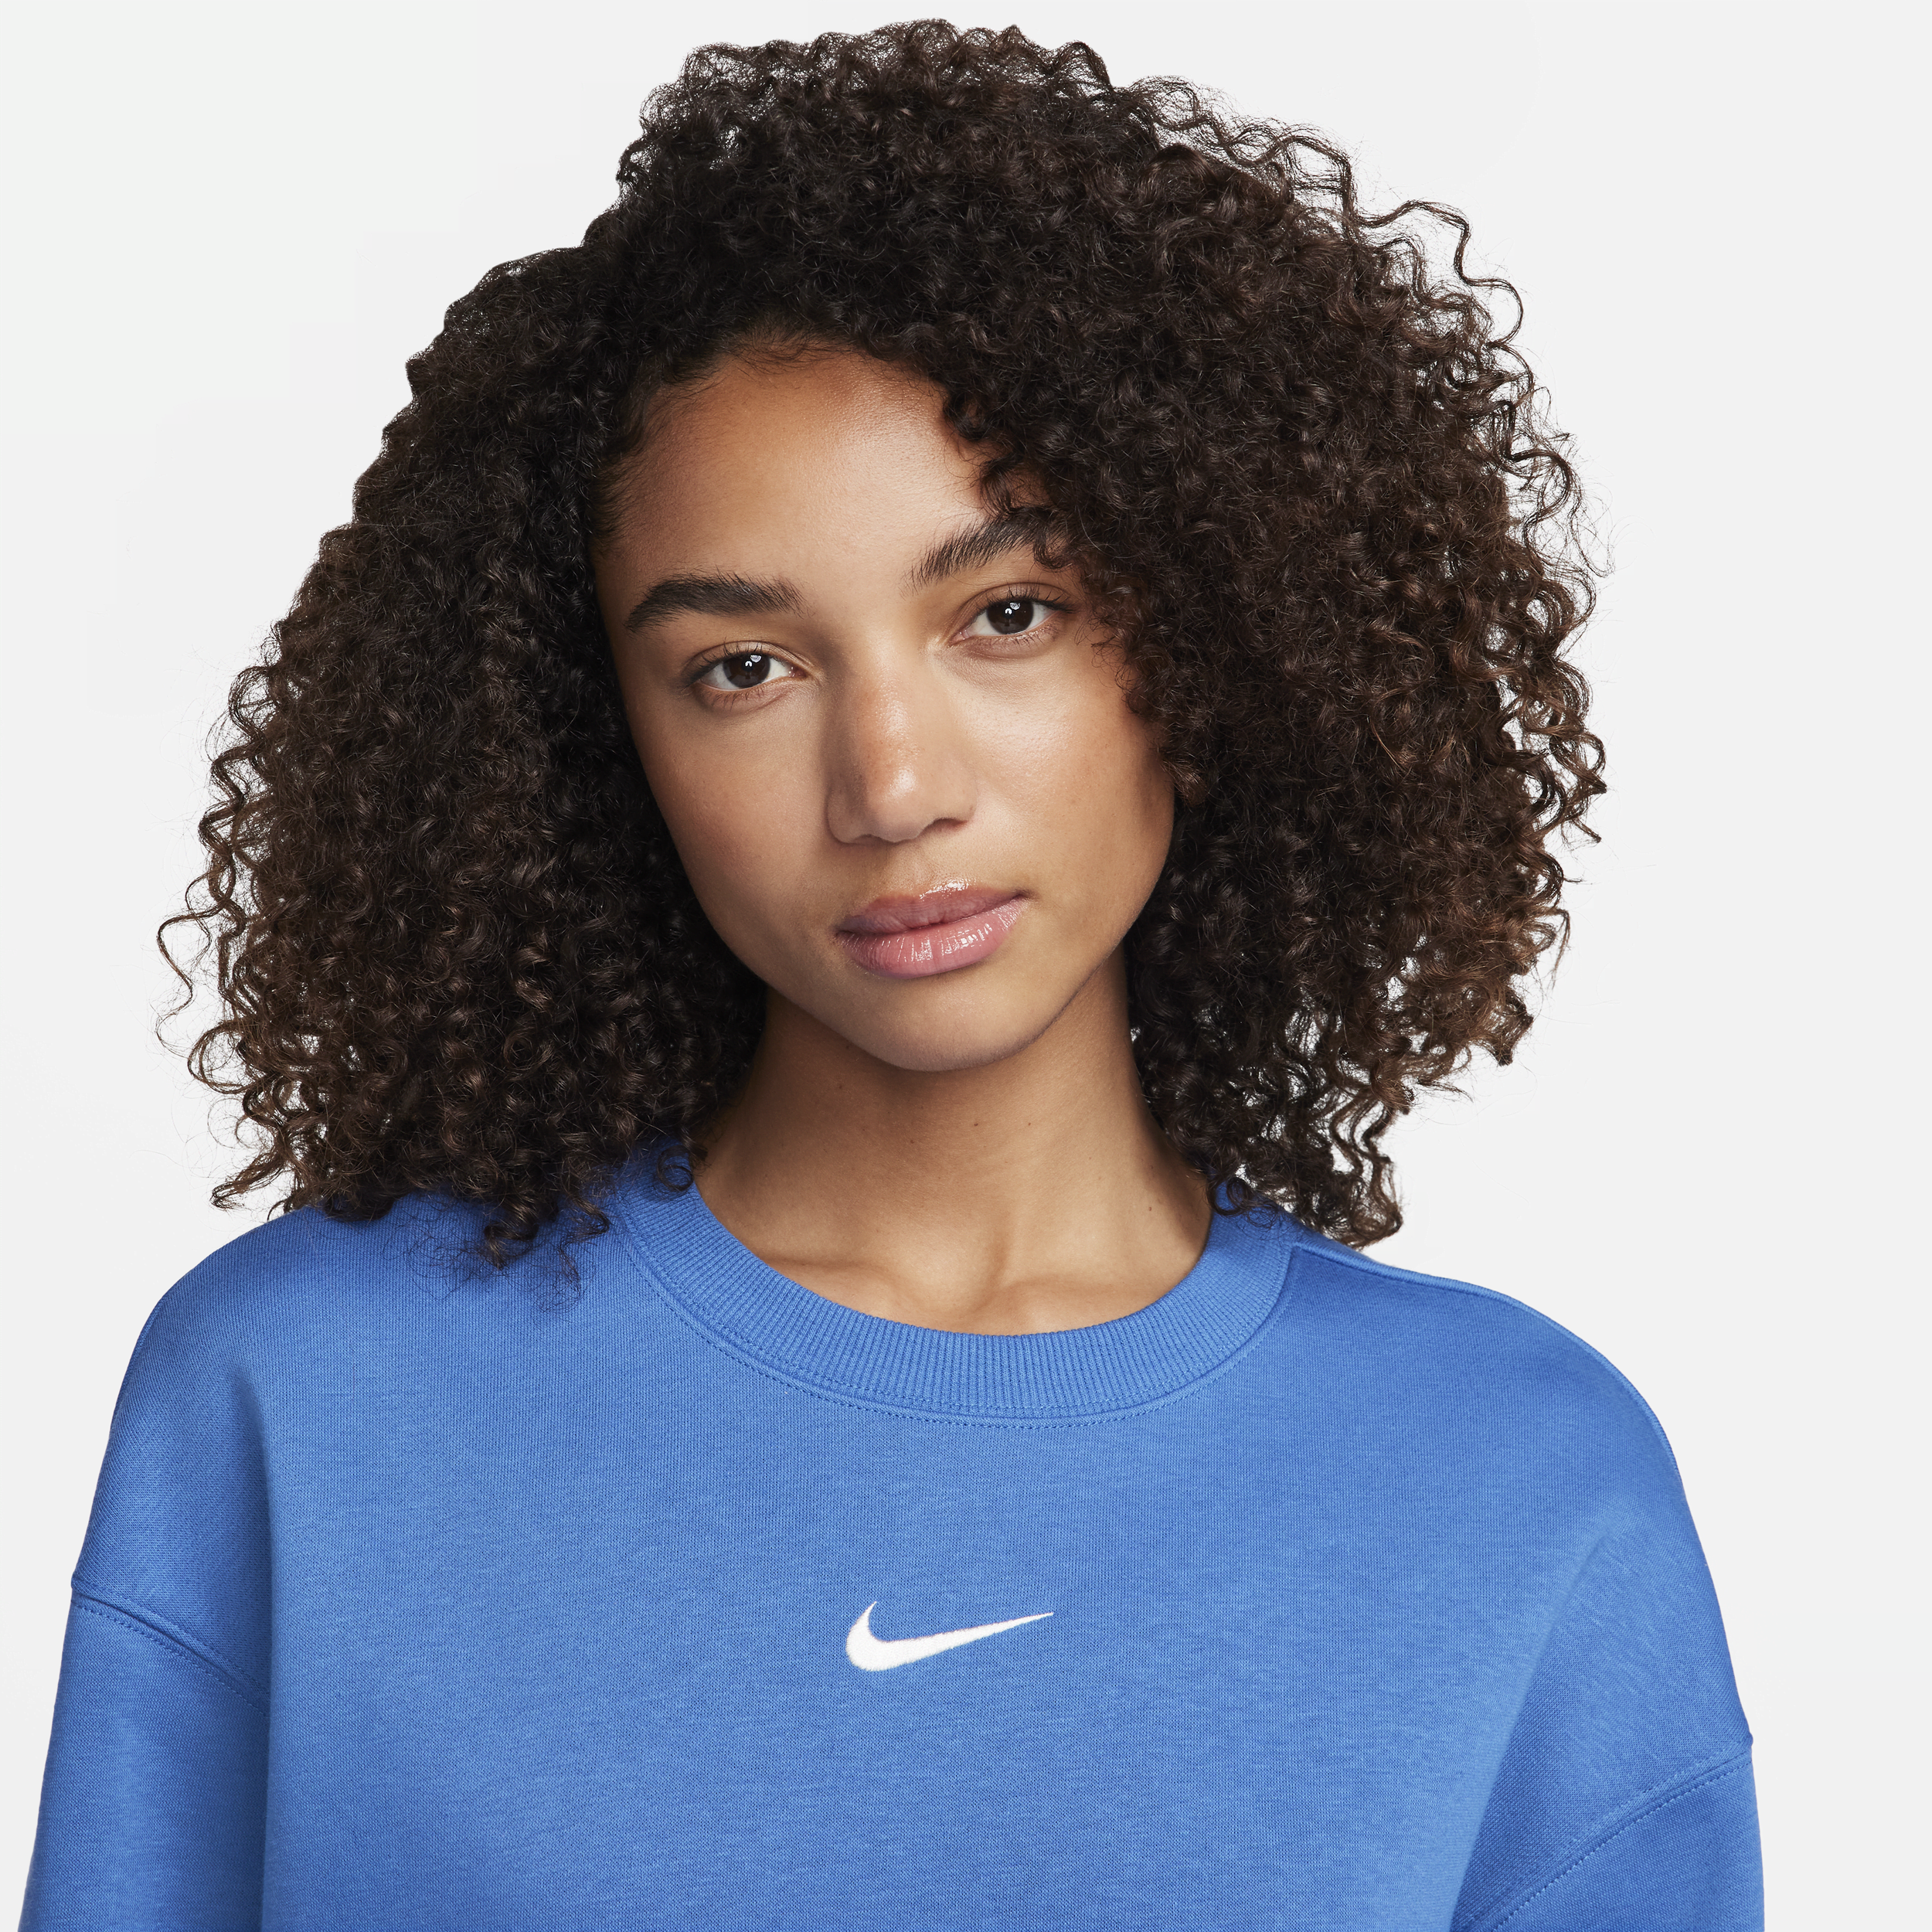 Nike Sportswear Phoenix Fleece Oversized sweatshirt met ronde hals voor dames Blauw